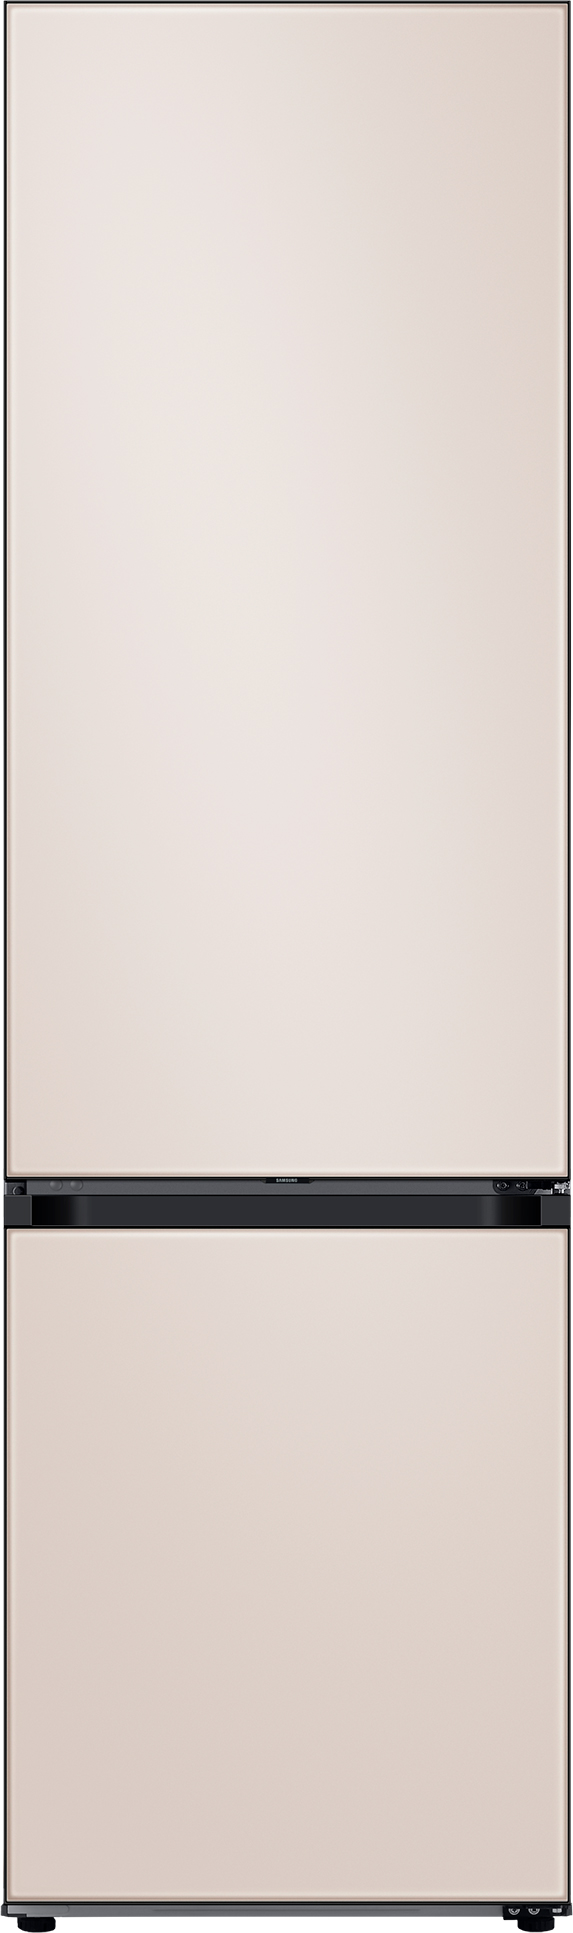 Холодильник Samsung RB38A6B6239/UA в интернет-магазине, главное фото